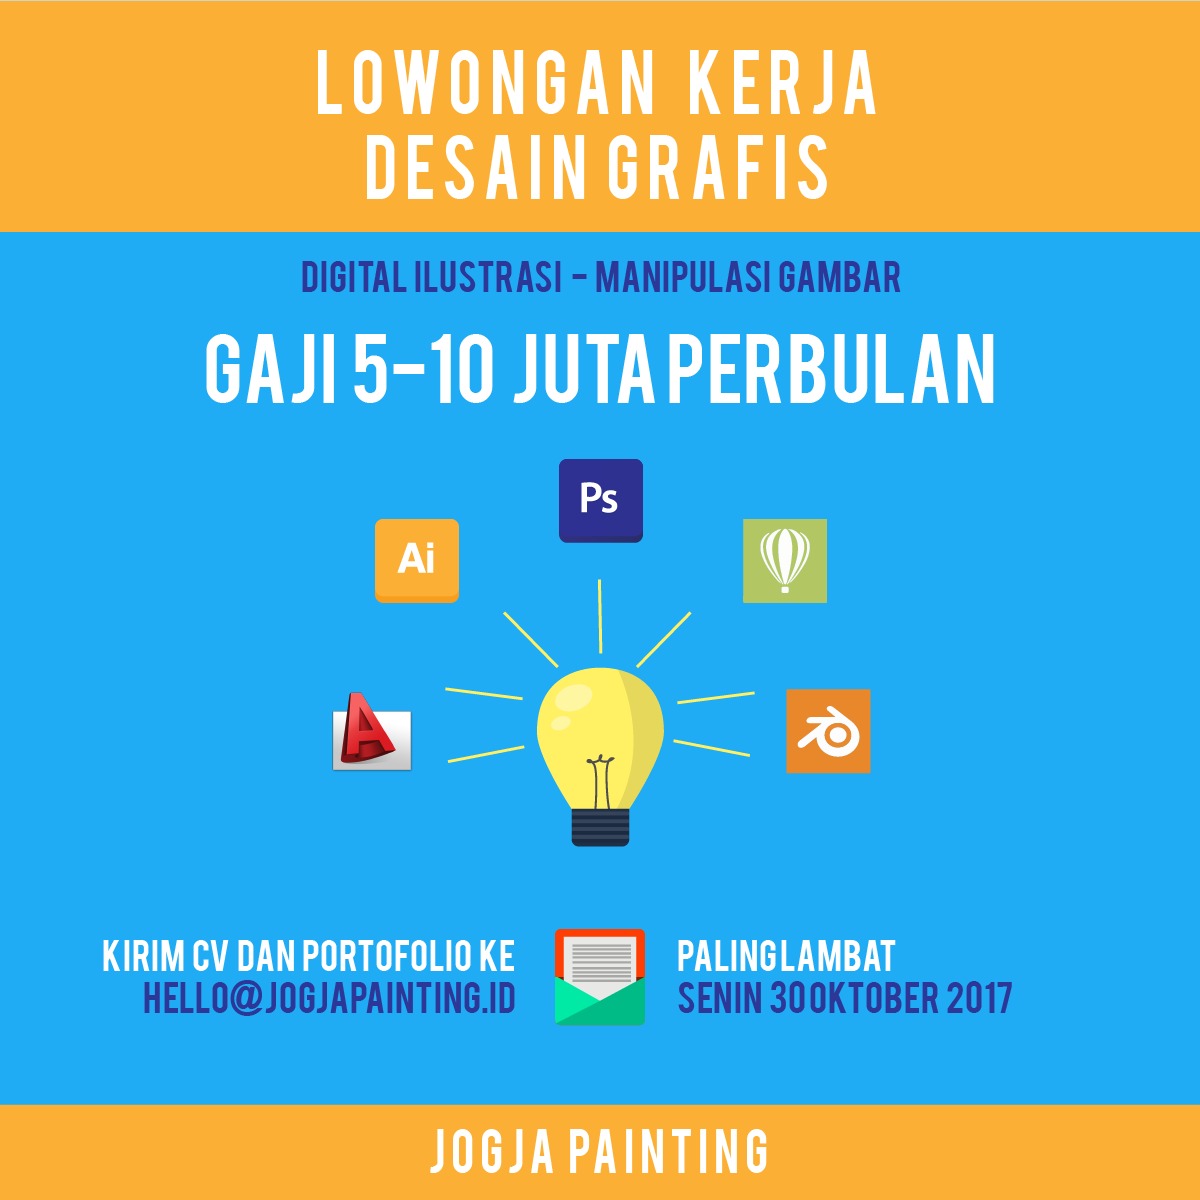 Lowongan Kerja Desain Grafis di Jogja Painting - Yogyakarta | Lowongan